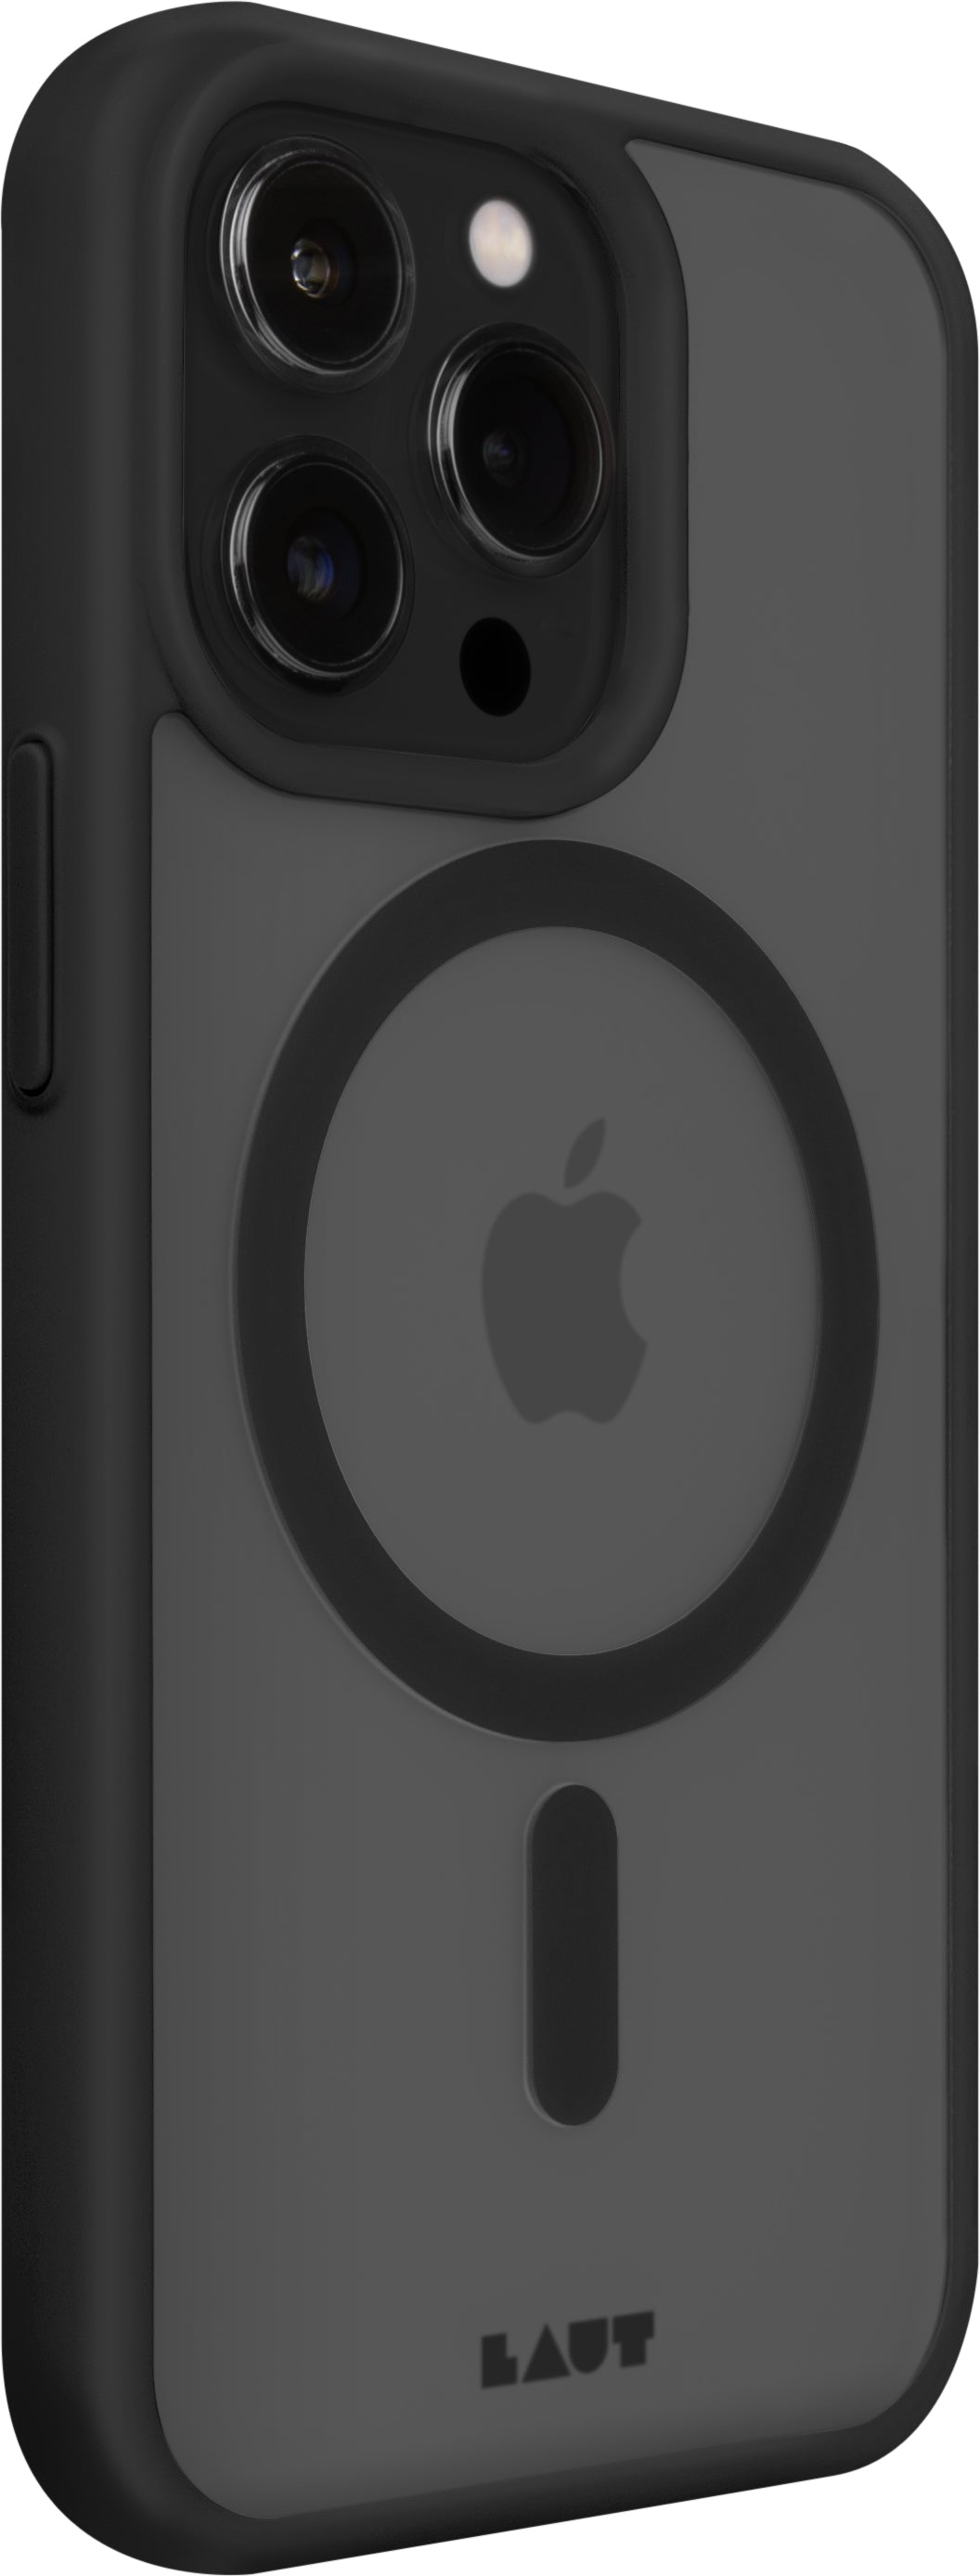 Funda para iPhone 14 Huex Protect de Laut iPhone 14 Pro Negro - Rossellimac